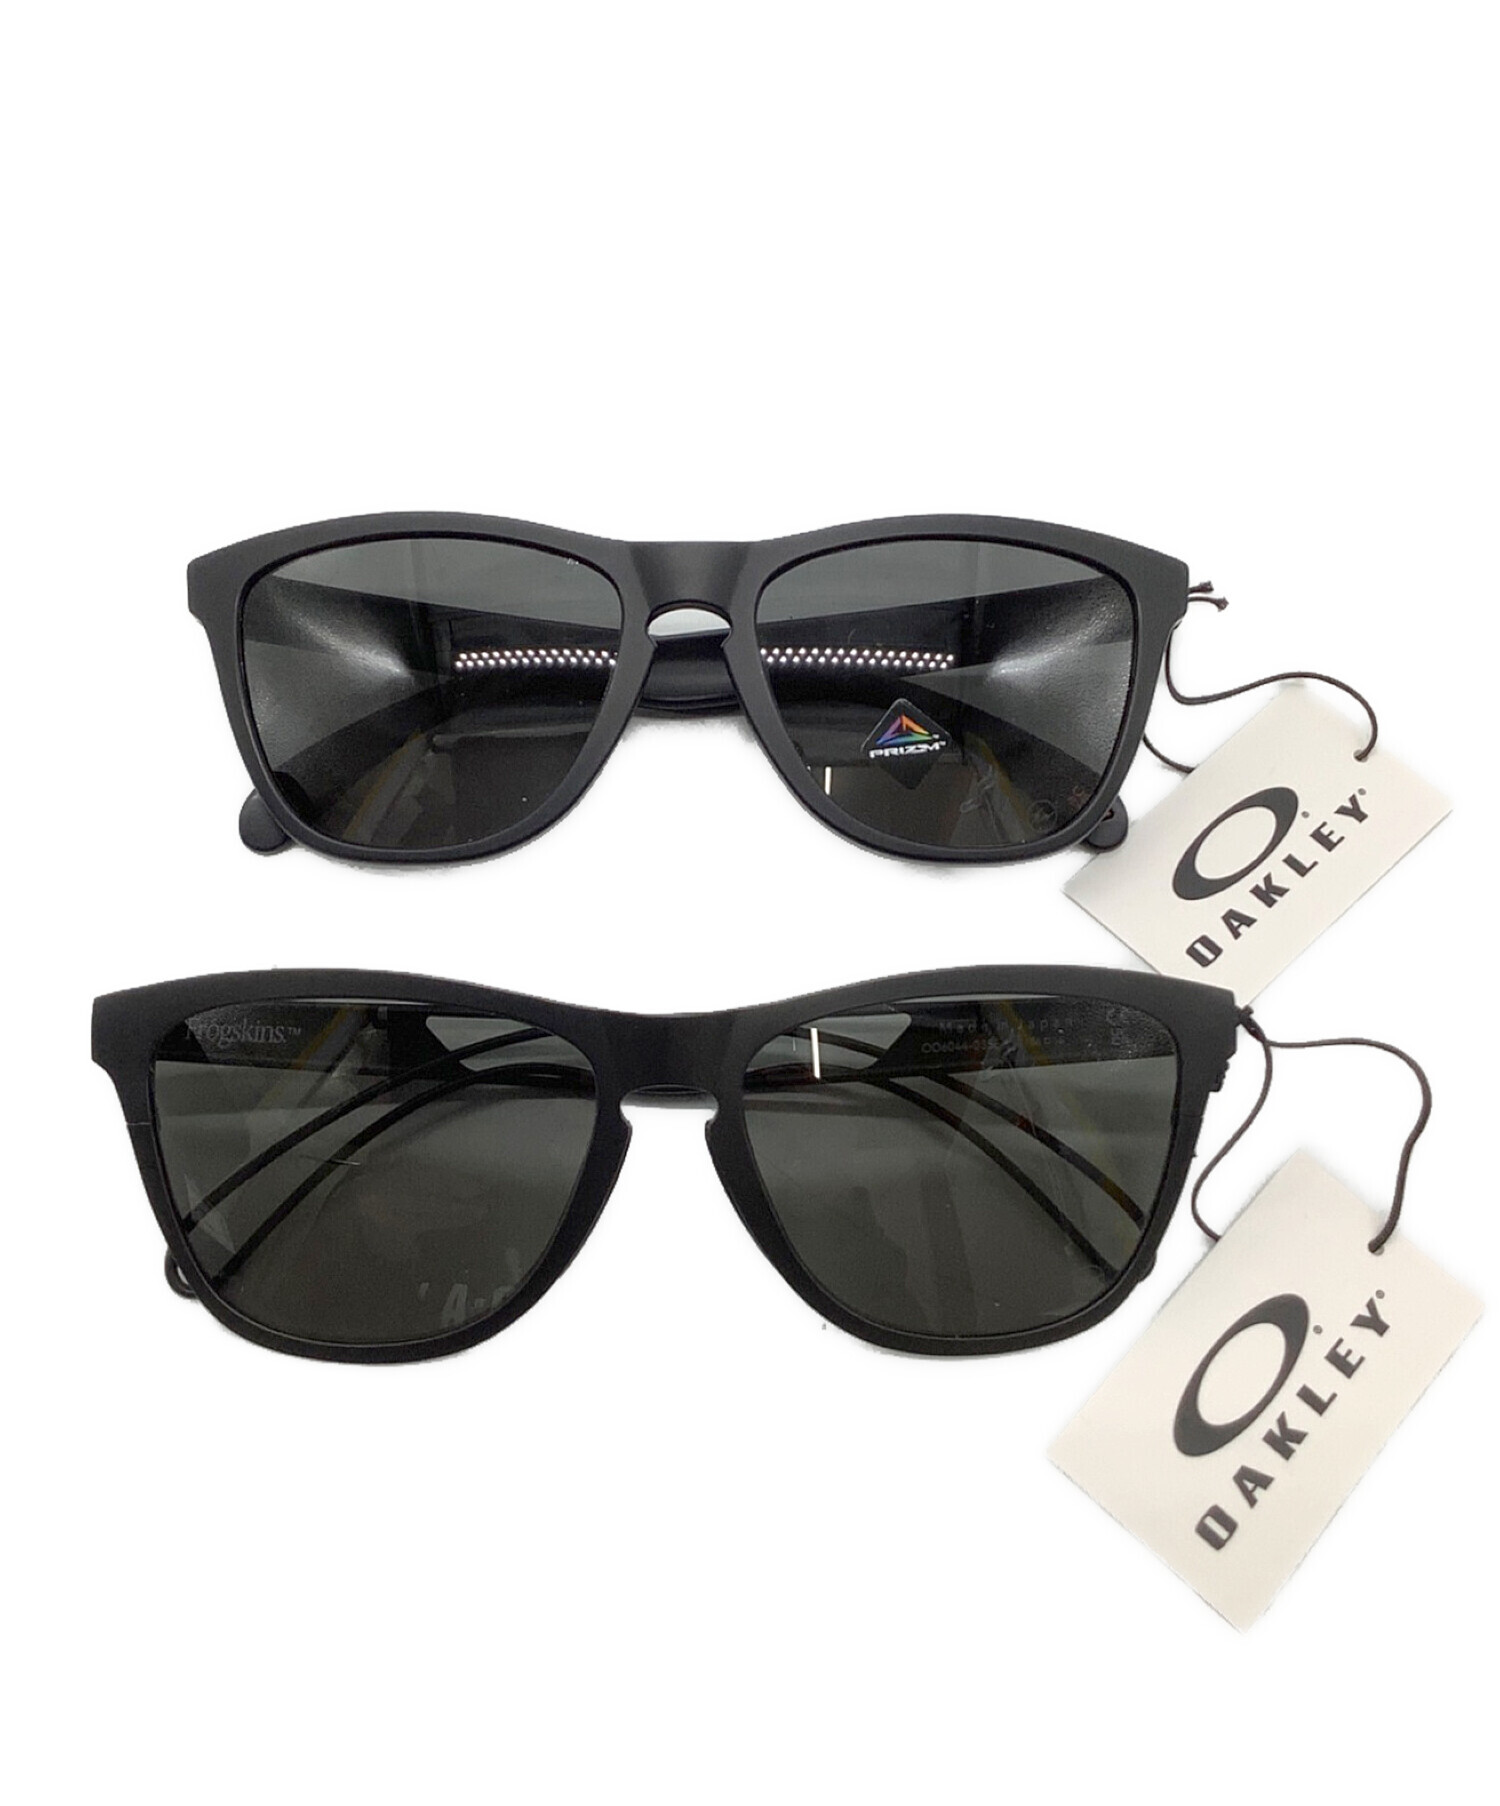 11,500円■OAKLEY × FRAGMENT オークリー フラグメント サングラス 眼鏡